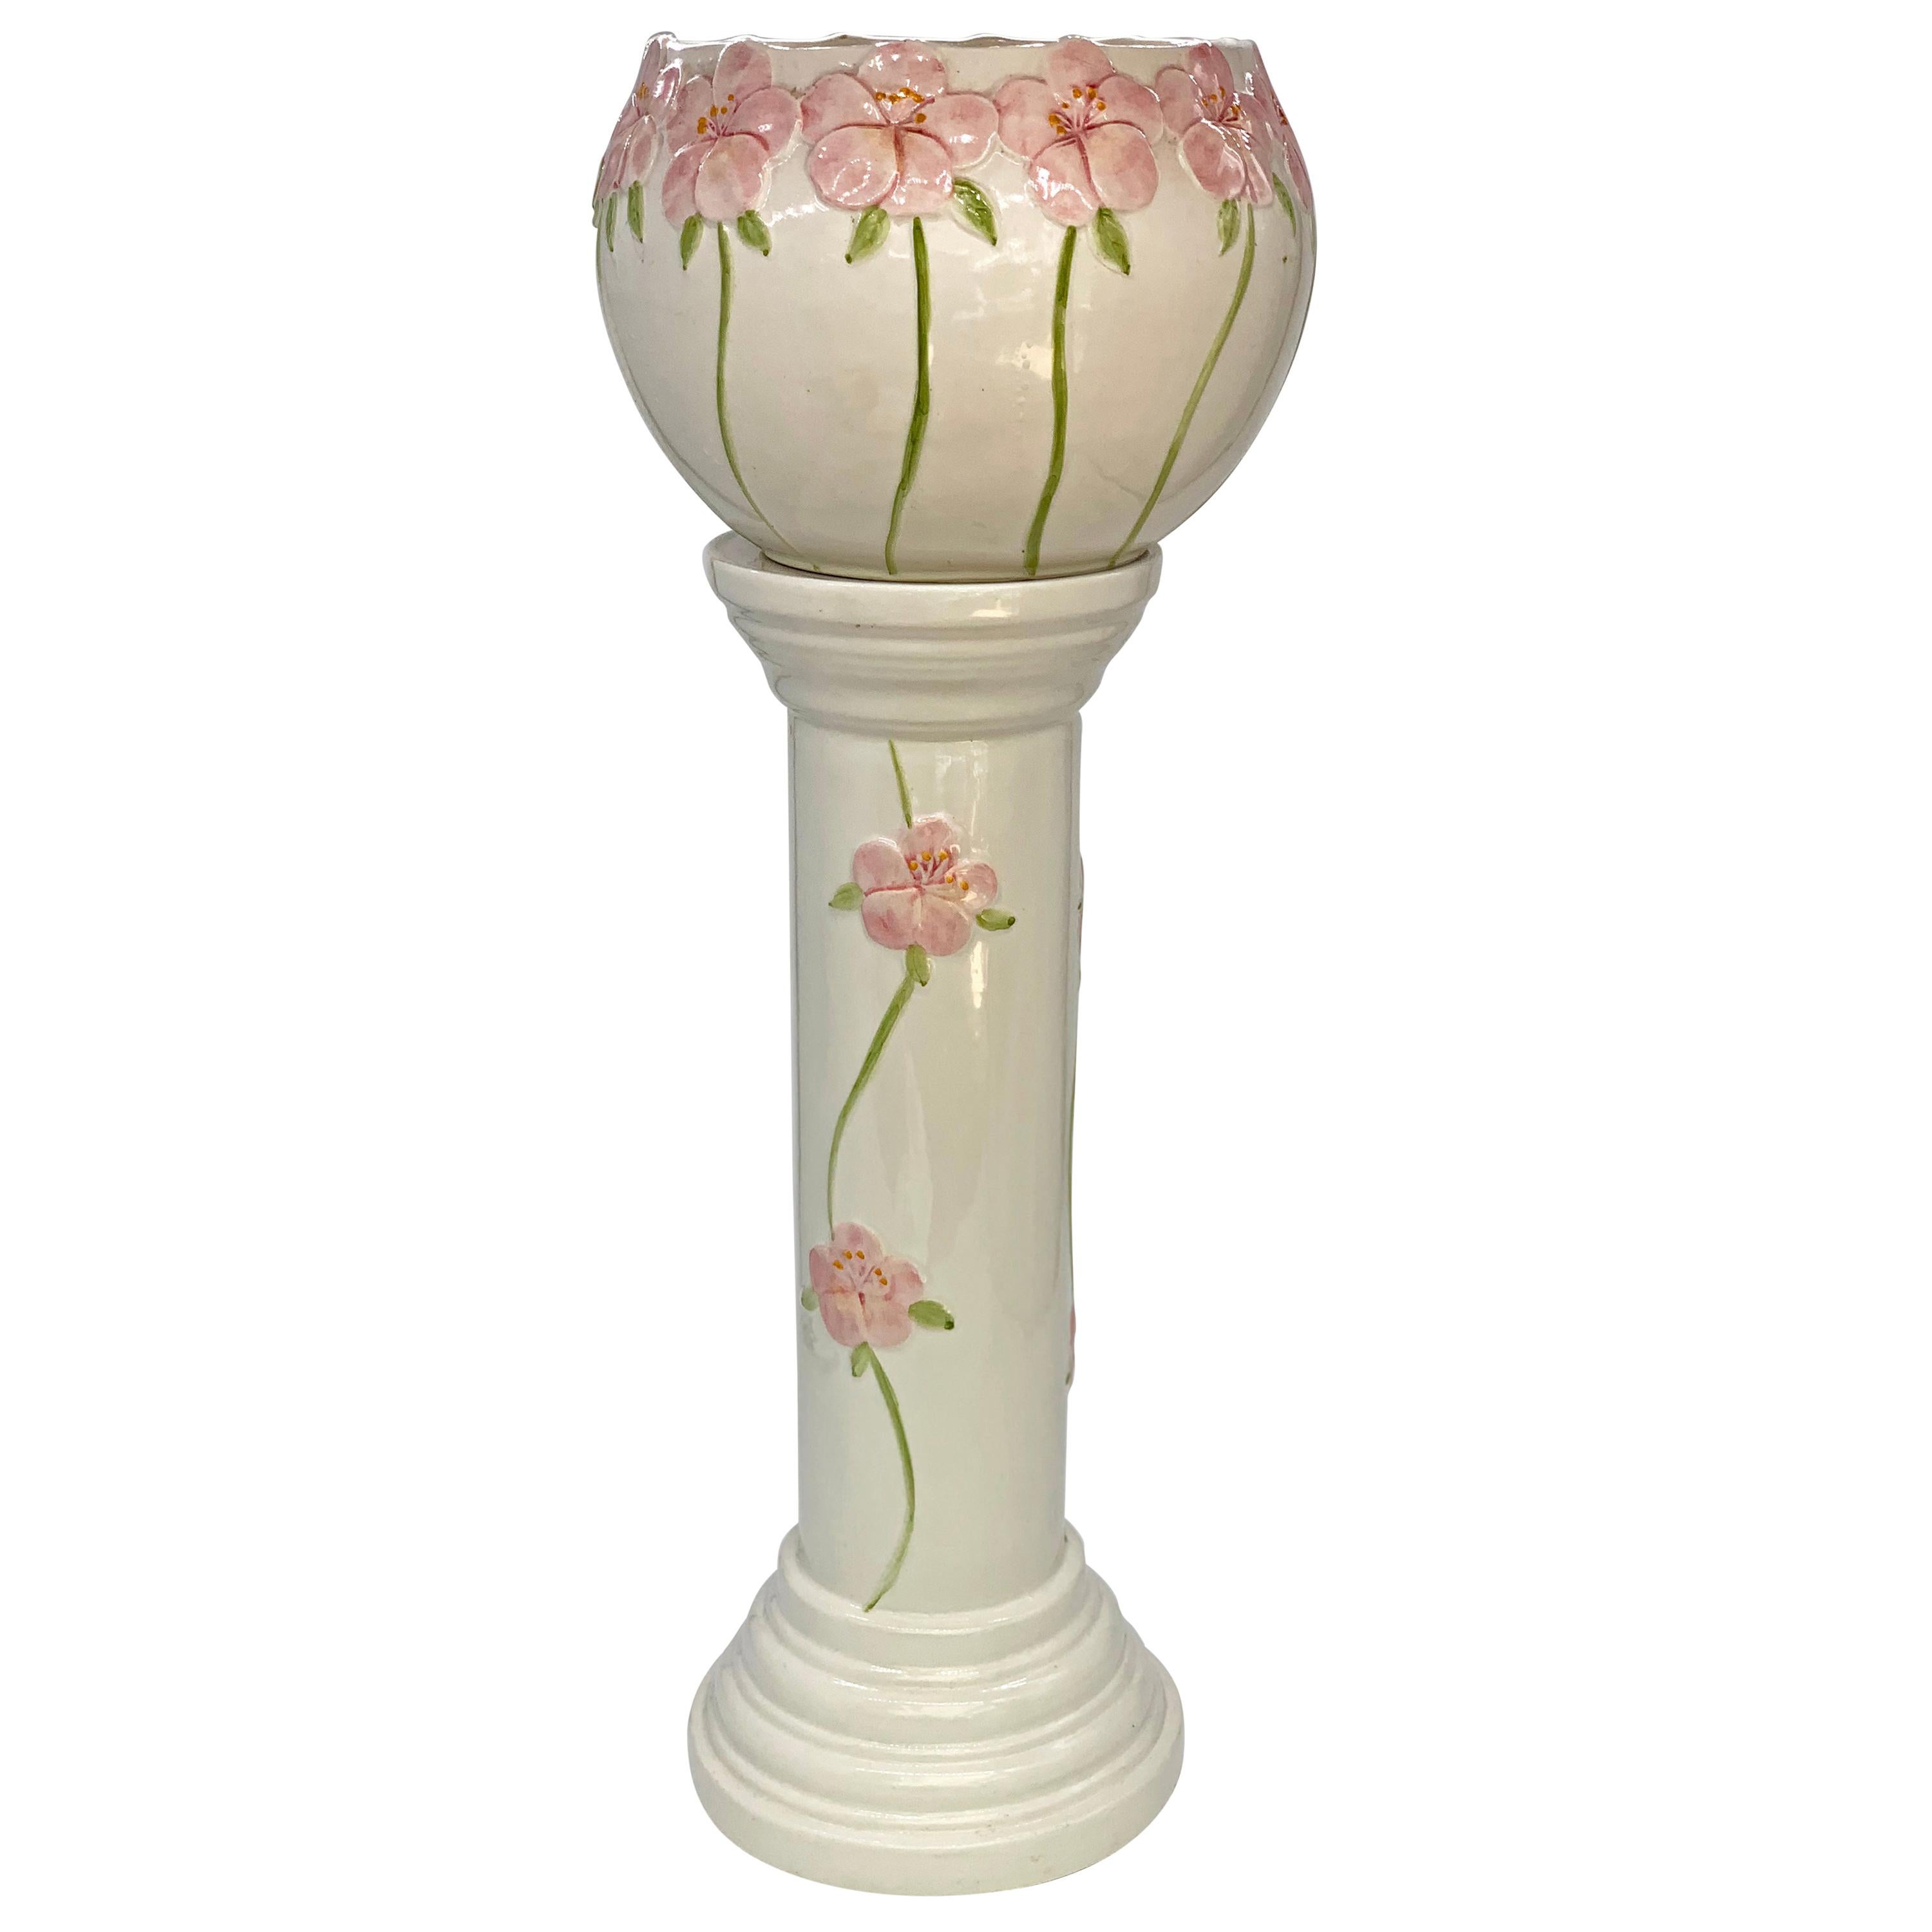 Jardinière décorative en porcelaine blanche du 20e siècle avec fleurs roses